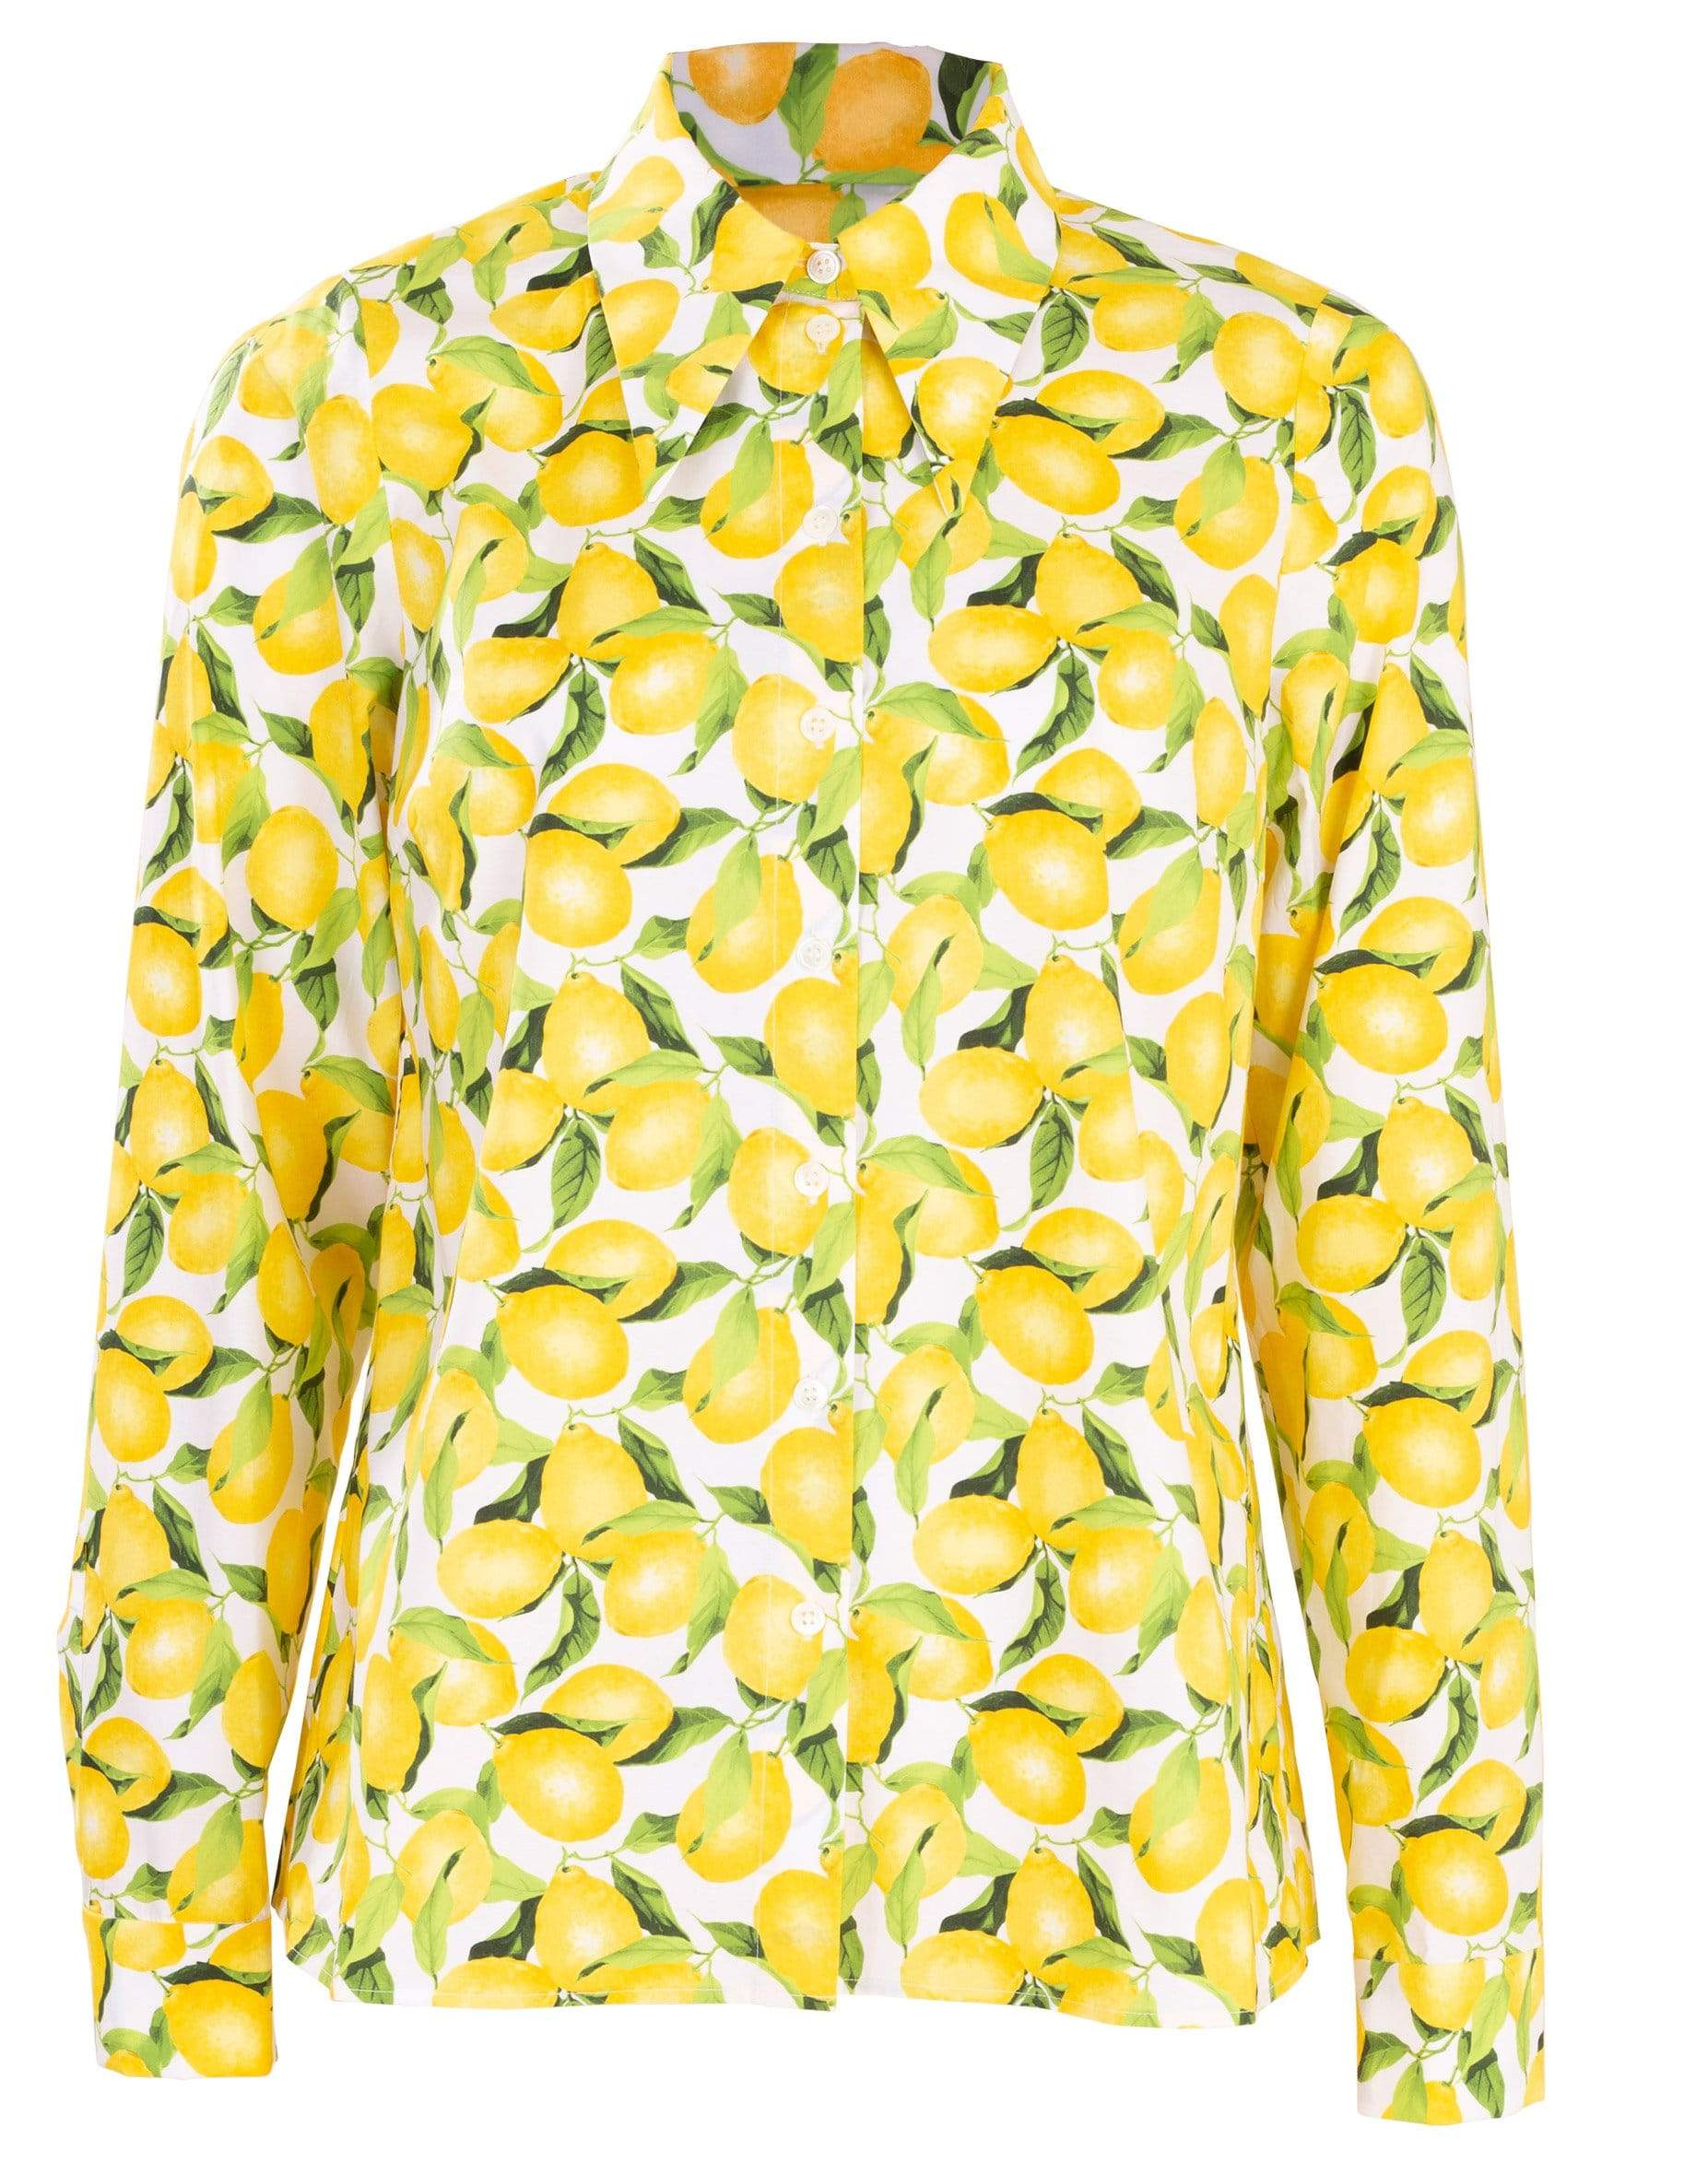 Lemon Print Button Down Blouse CLOTHINGTOPBLOUSE MICHAEL KORS   